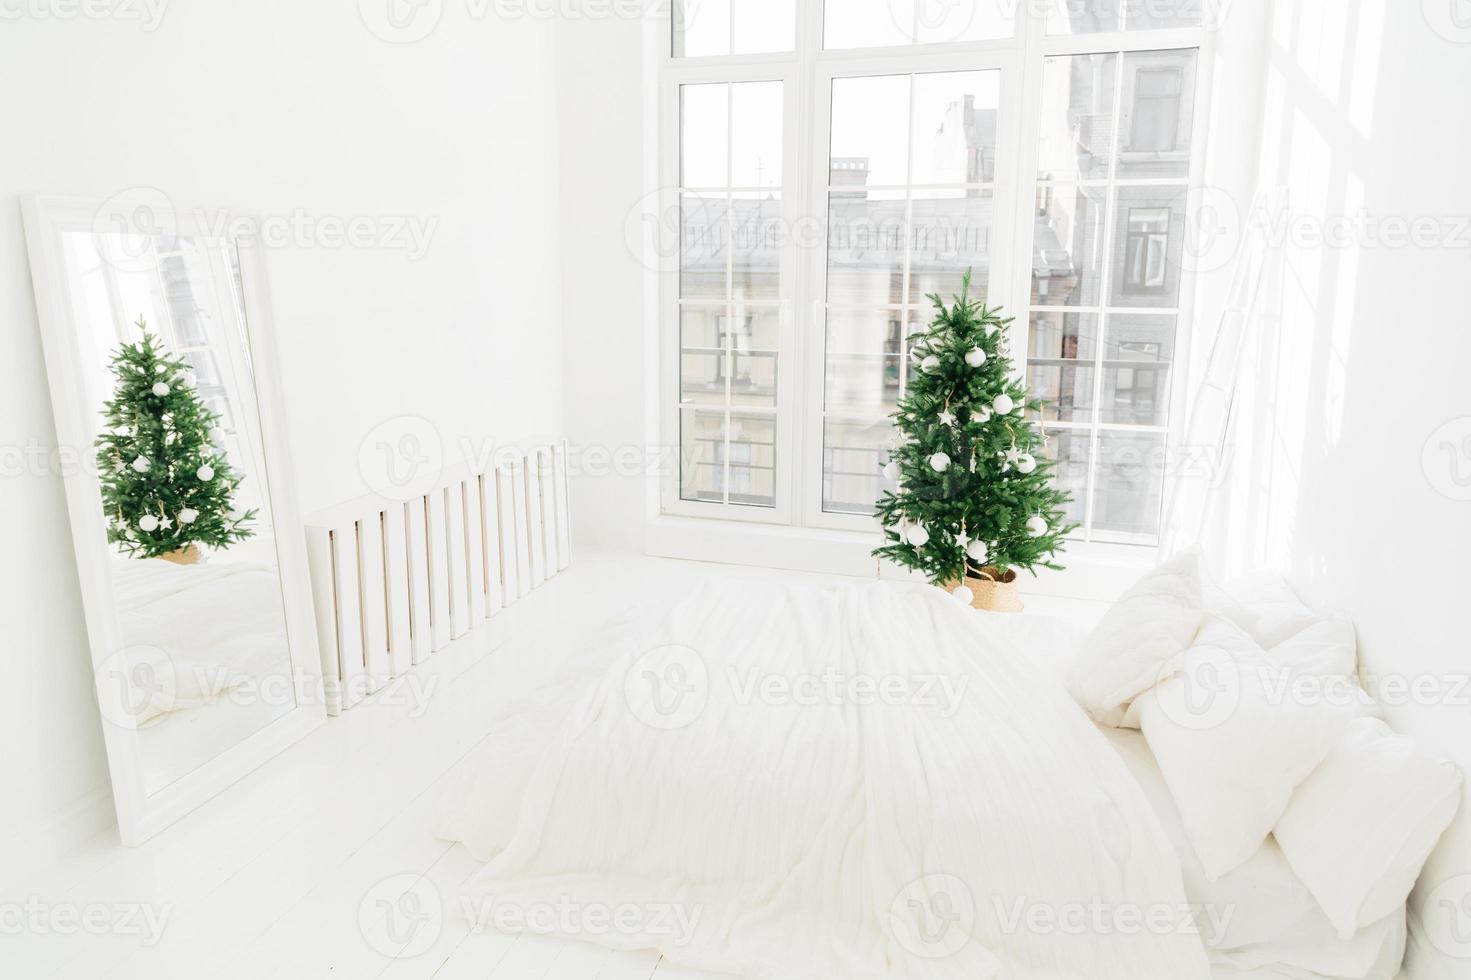 conforto, lar e conceito de véspera de natal. quarto com cama macia branca, espelho, grande janela para luz entrando no quarto, árvore de ano novo decorada e escada. decoração de férias. foto